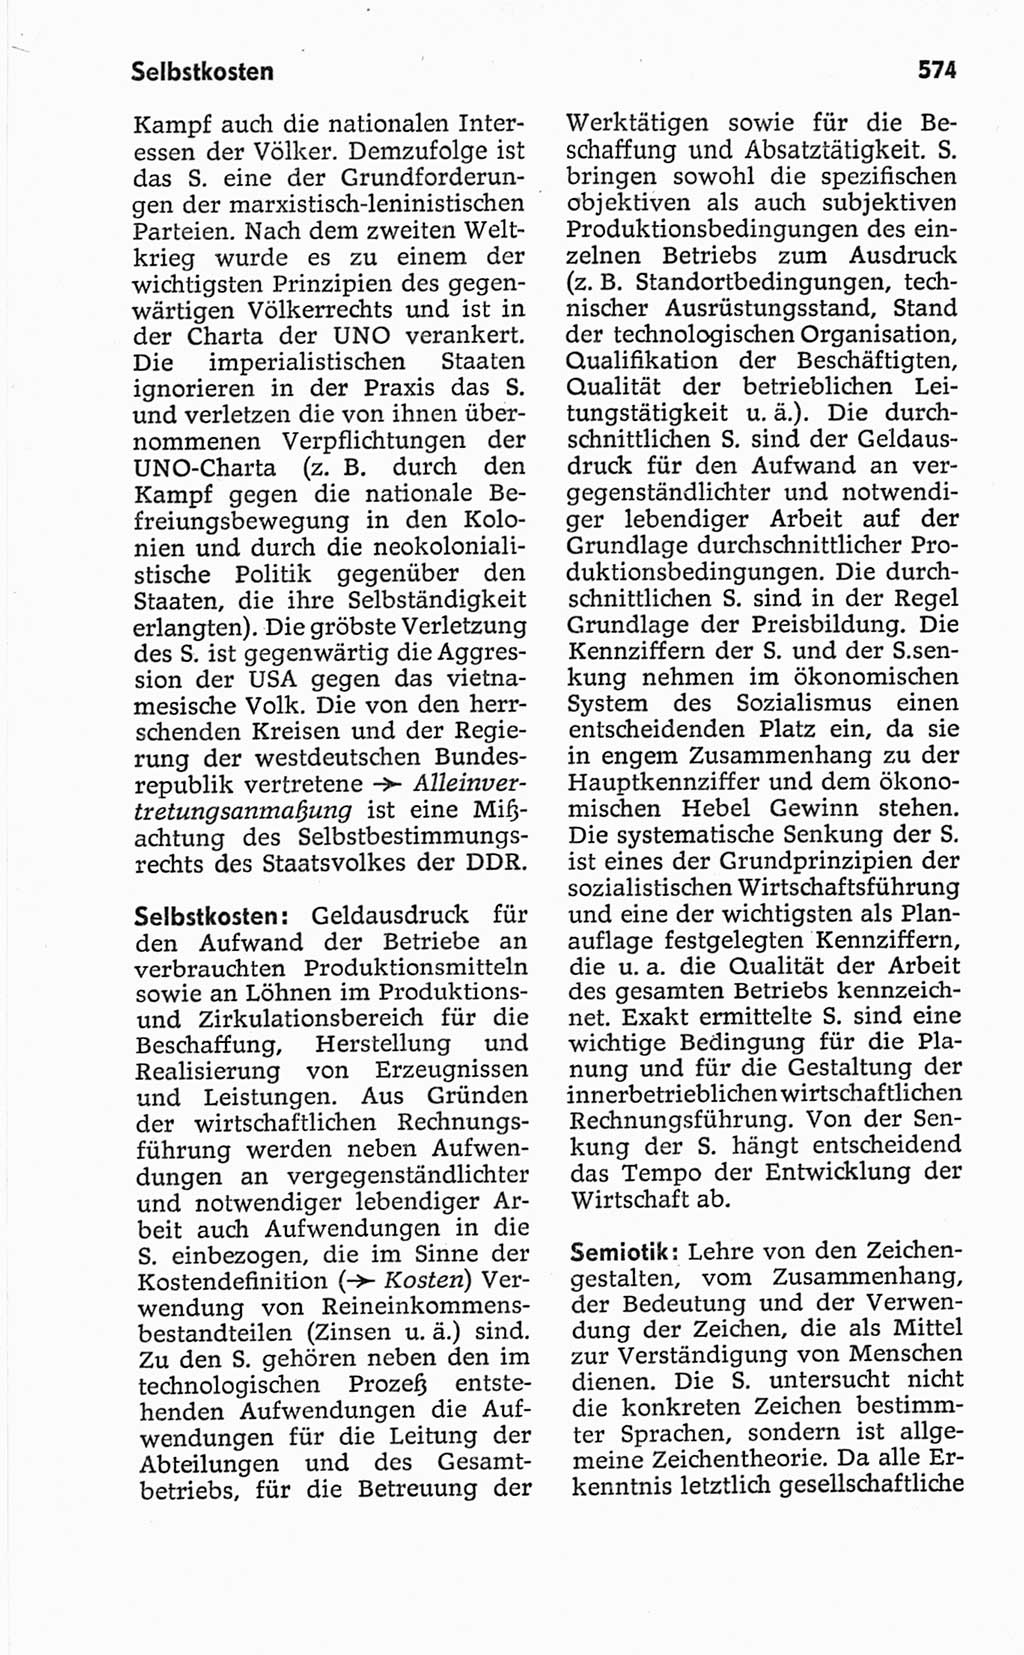 Kleines politisches Wörterbuch [Deutsche Demokratische Republik (DDR)] 1967, Seite 574 (Kl. pol. Wb. DDR 1967, S. 574)